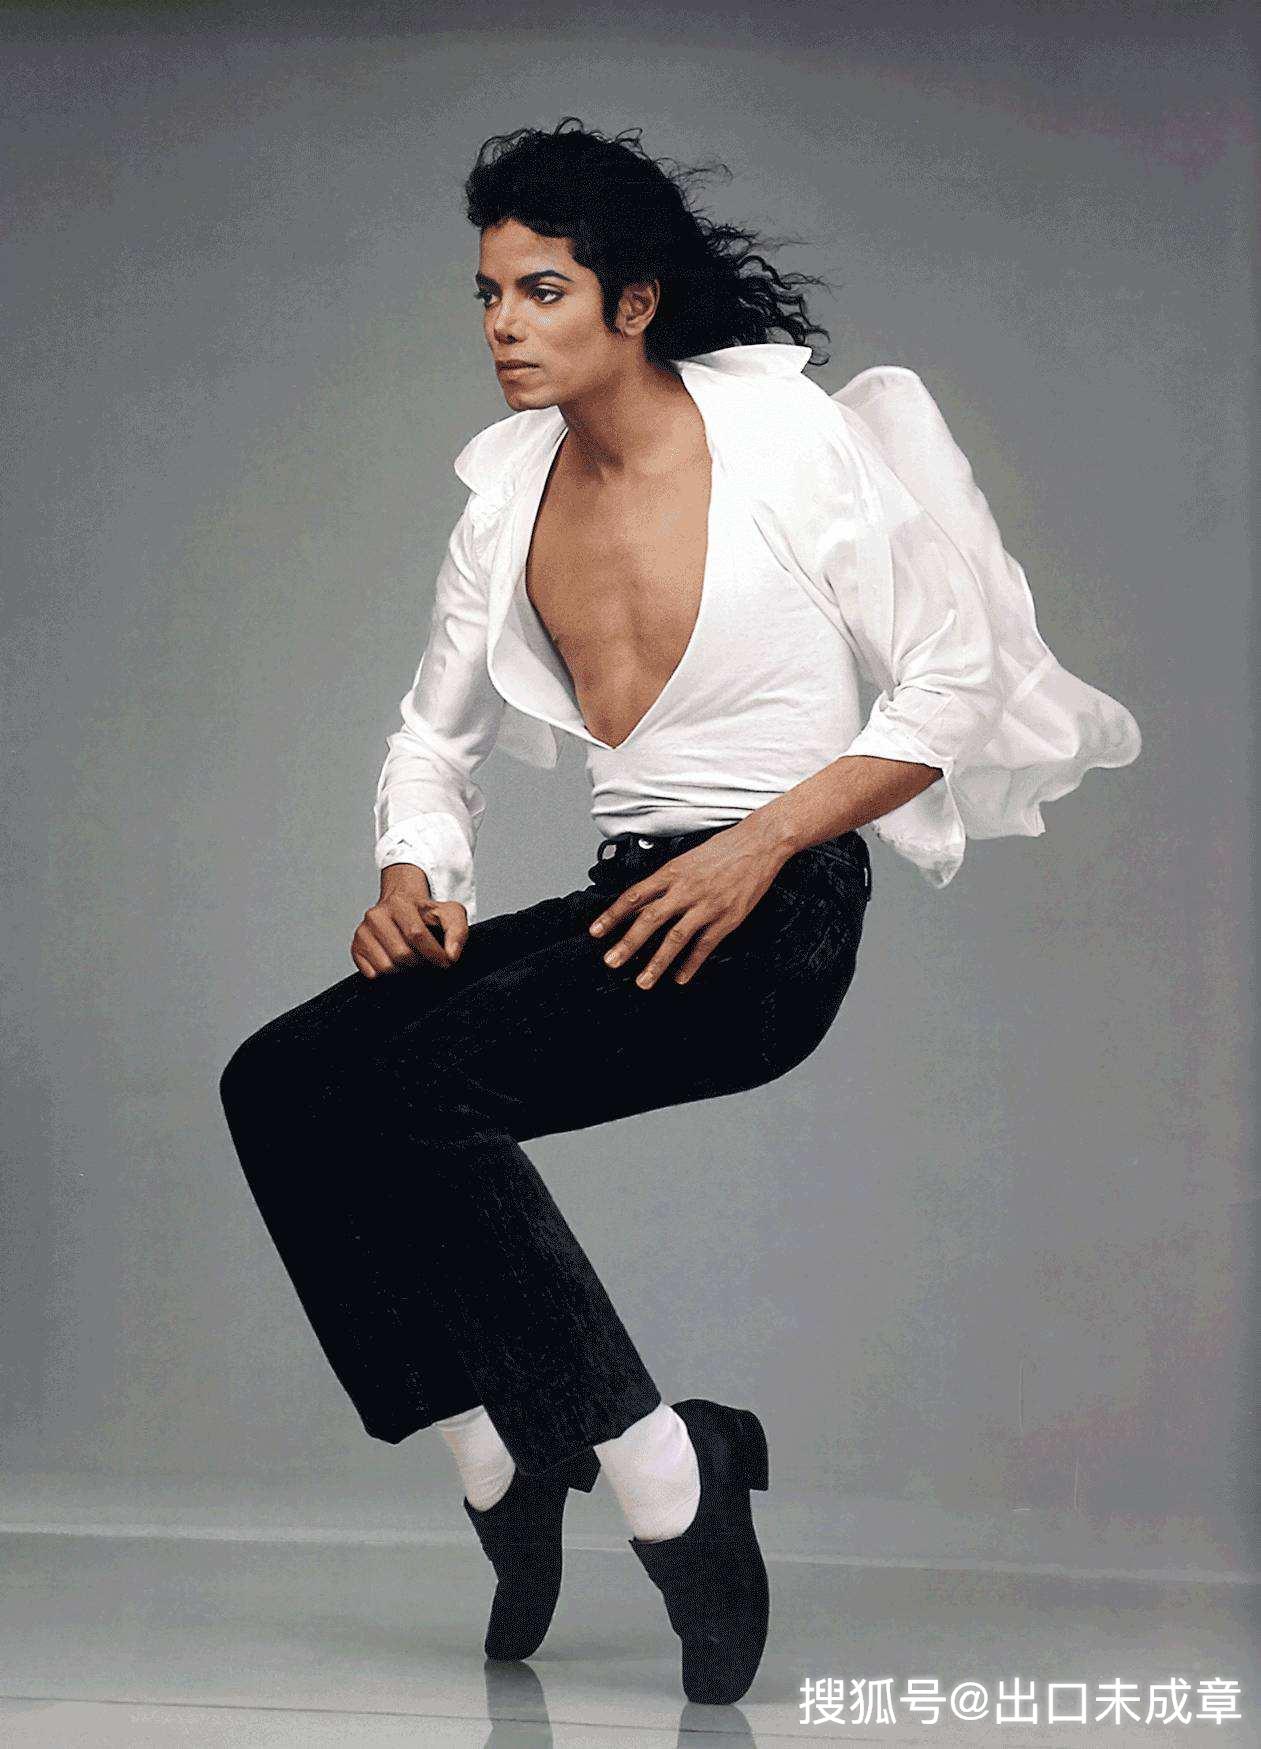 迈克尔 杰克逊(Michael Jackson) 壁纸(二) - 设计之家